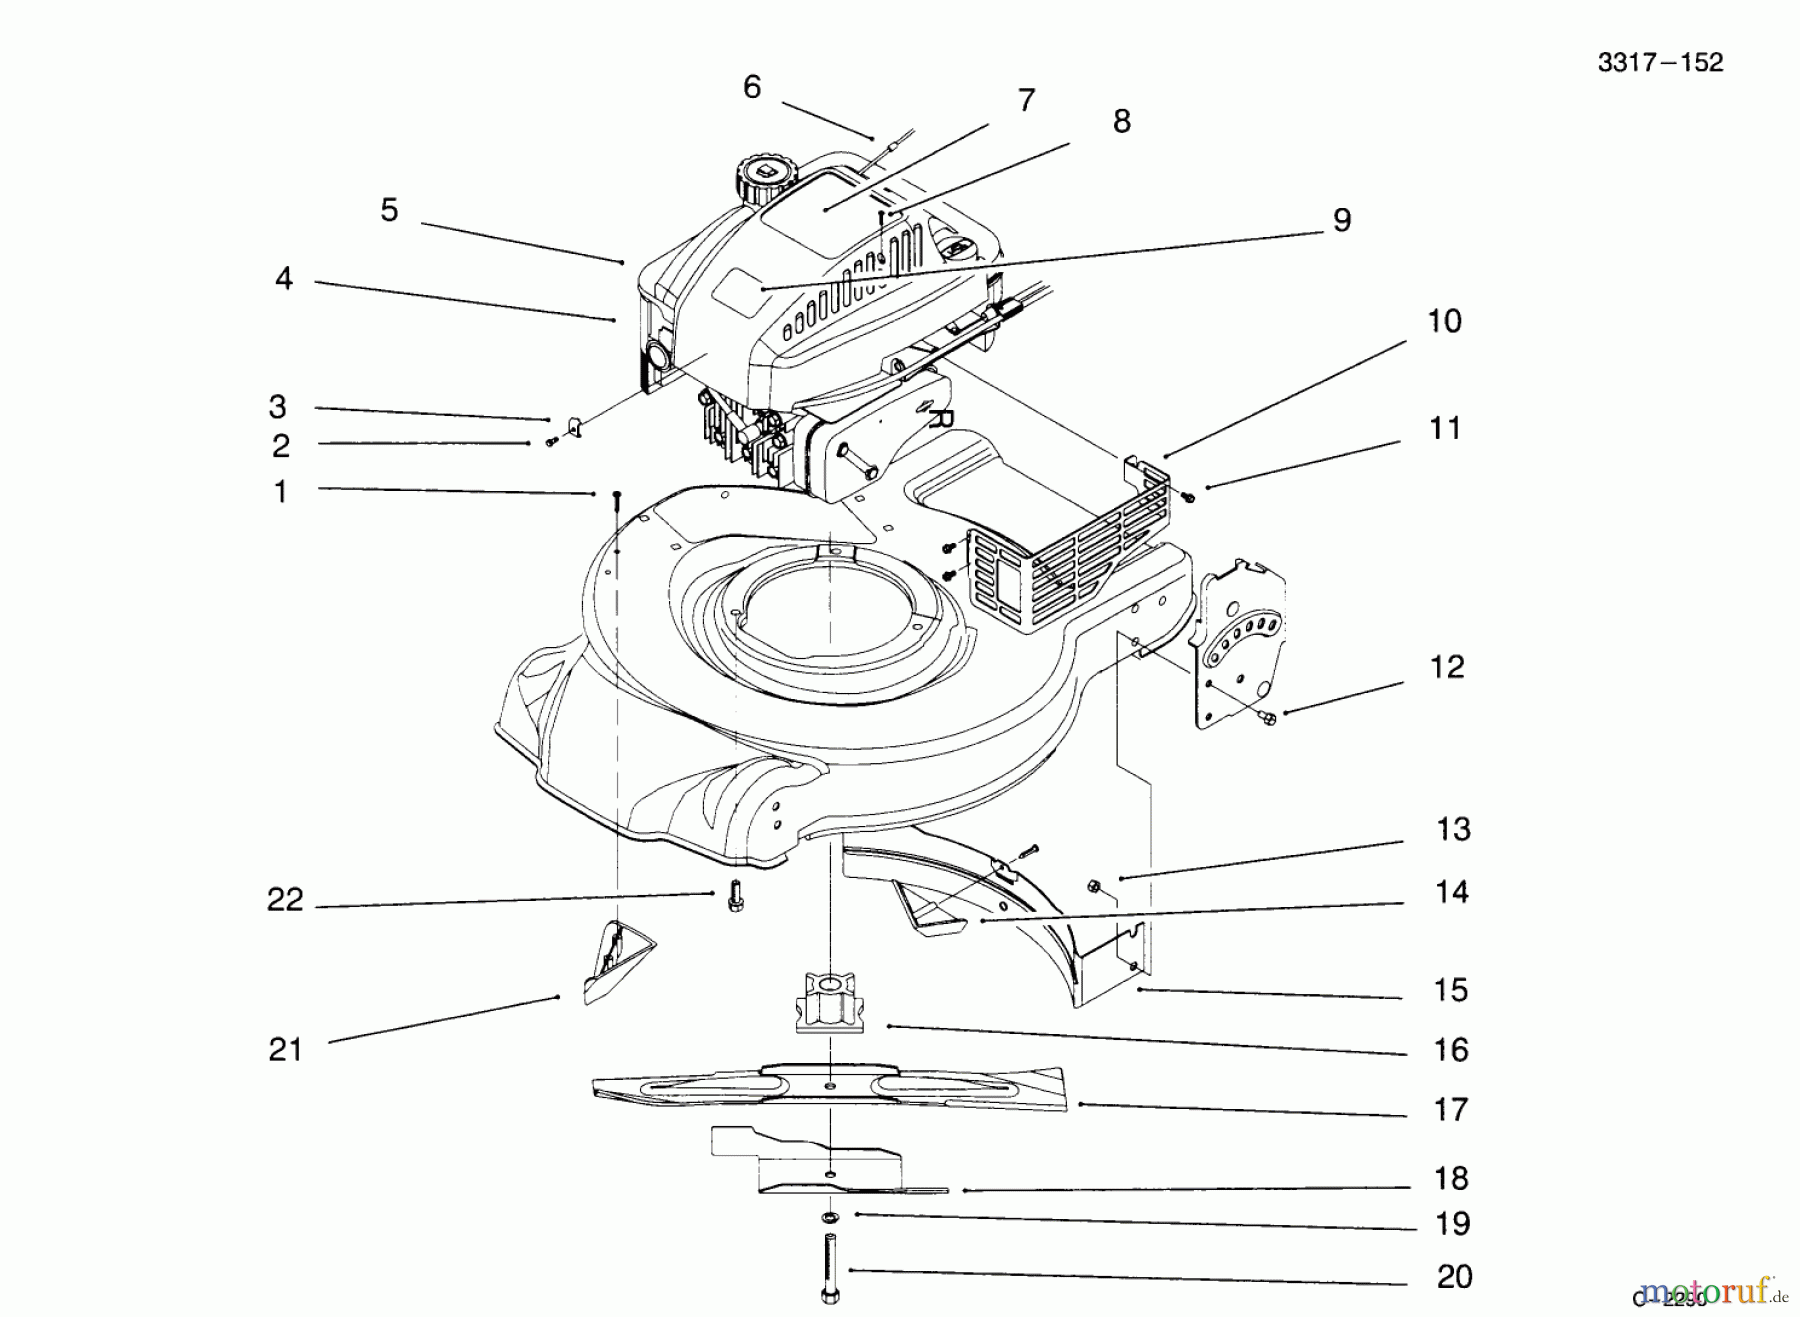  Toro Neu Mowers, Walk-Behind Seite 1 20443 - Toro Lawnmower, 1995 (5900001-5999999) ENGINE ASSEMBLY #2